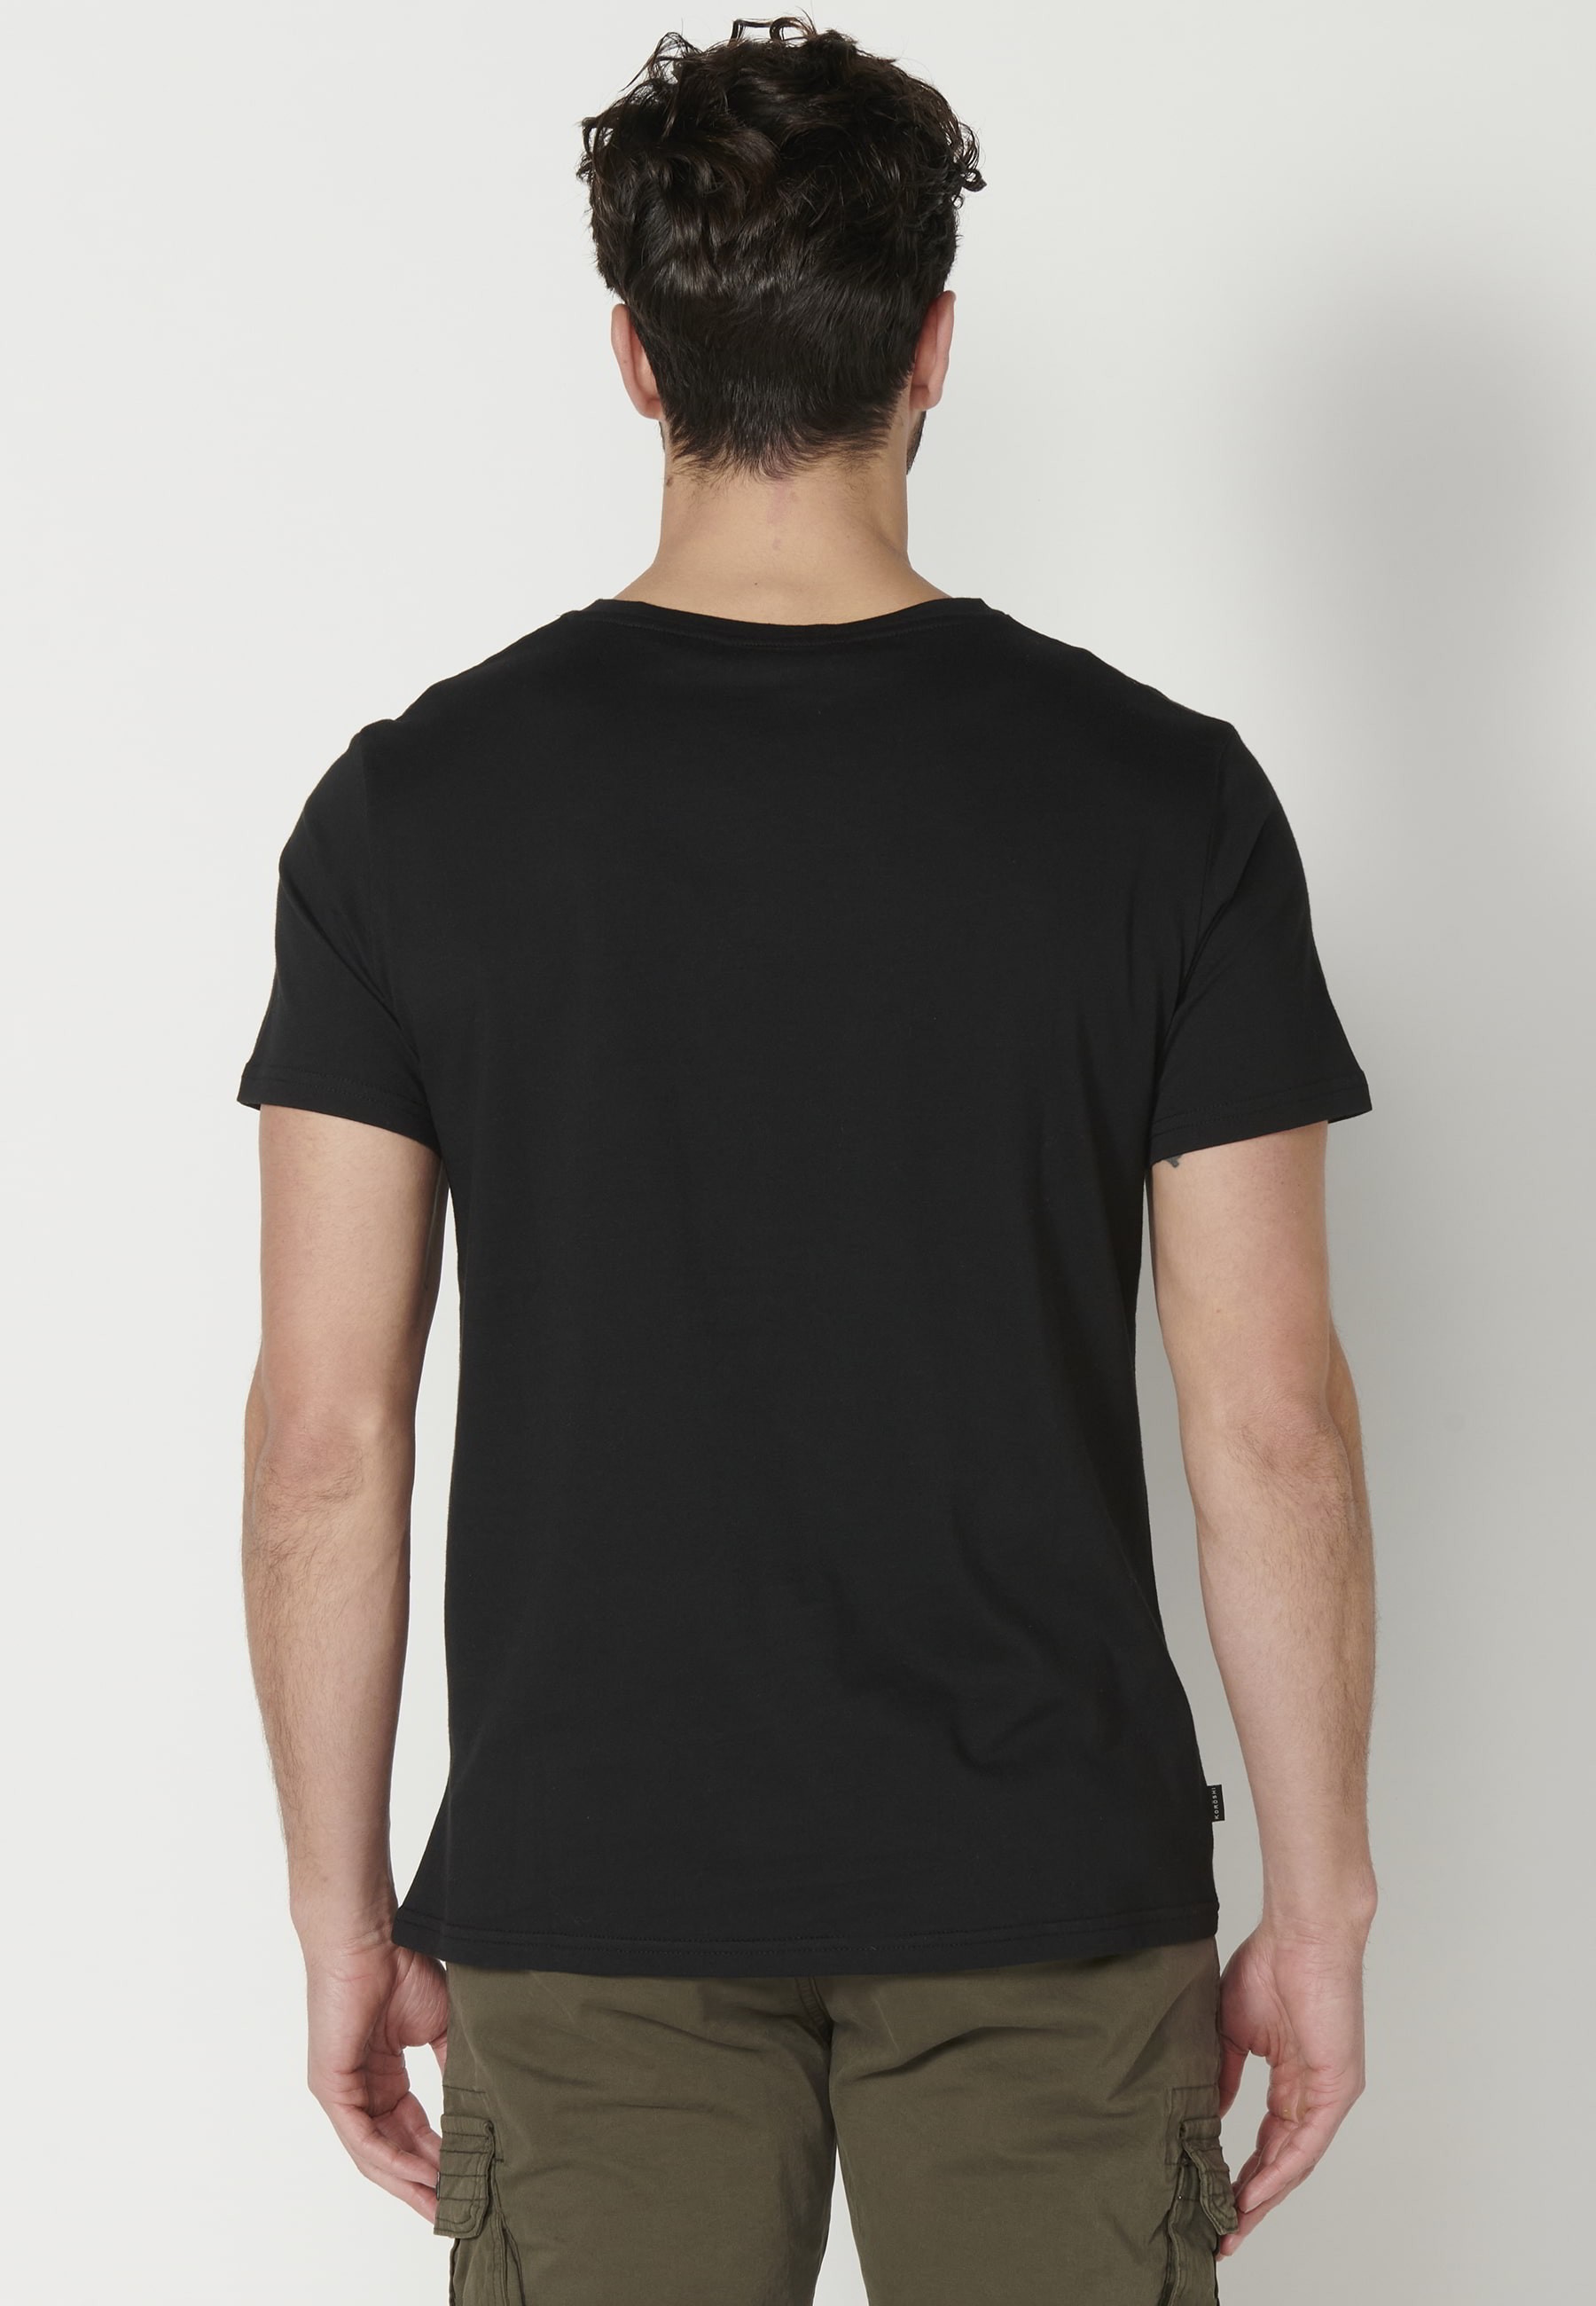 Men's Black Front Print Cotton Short Sleeve T-shirt